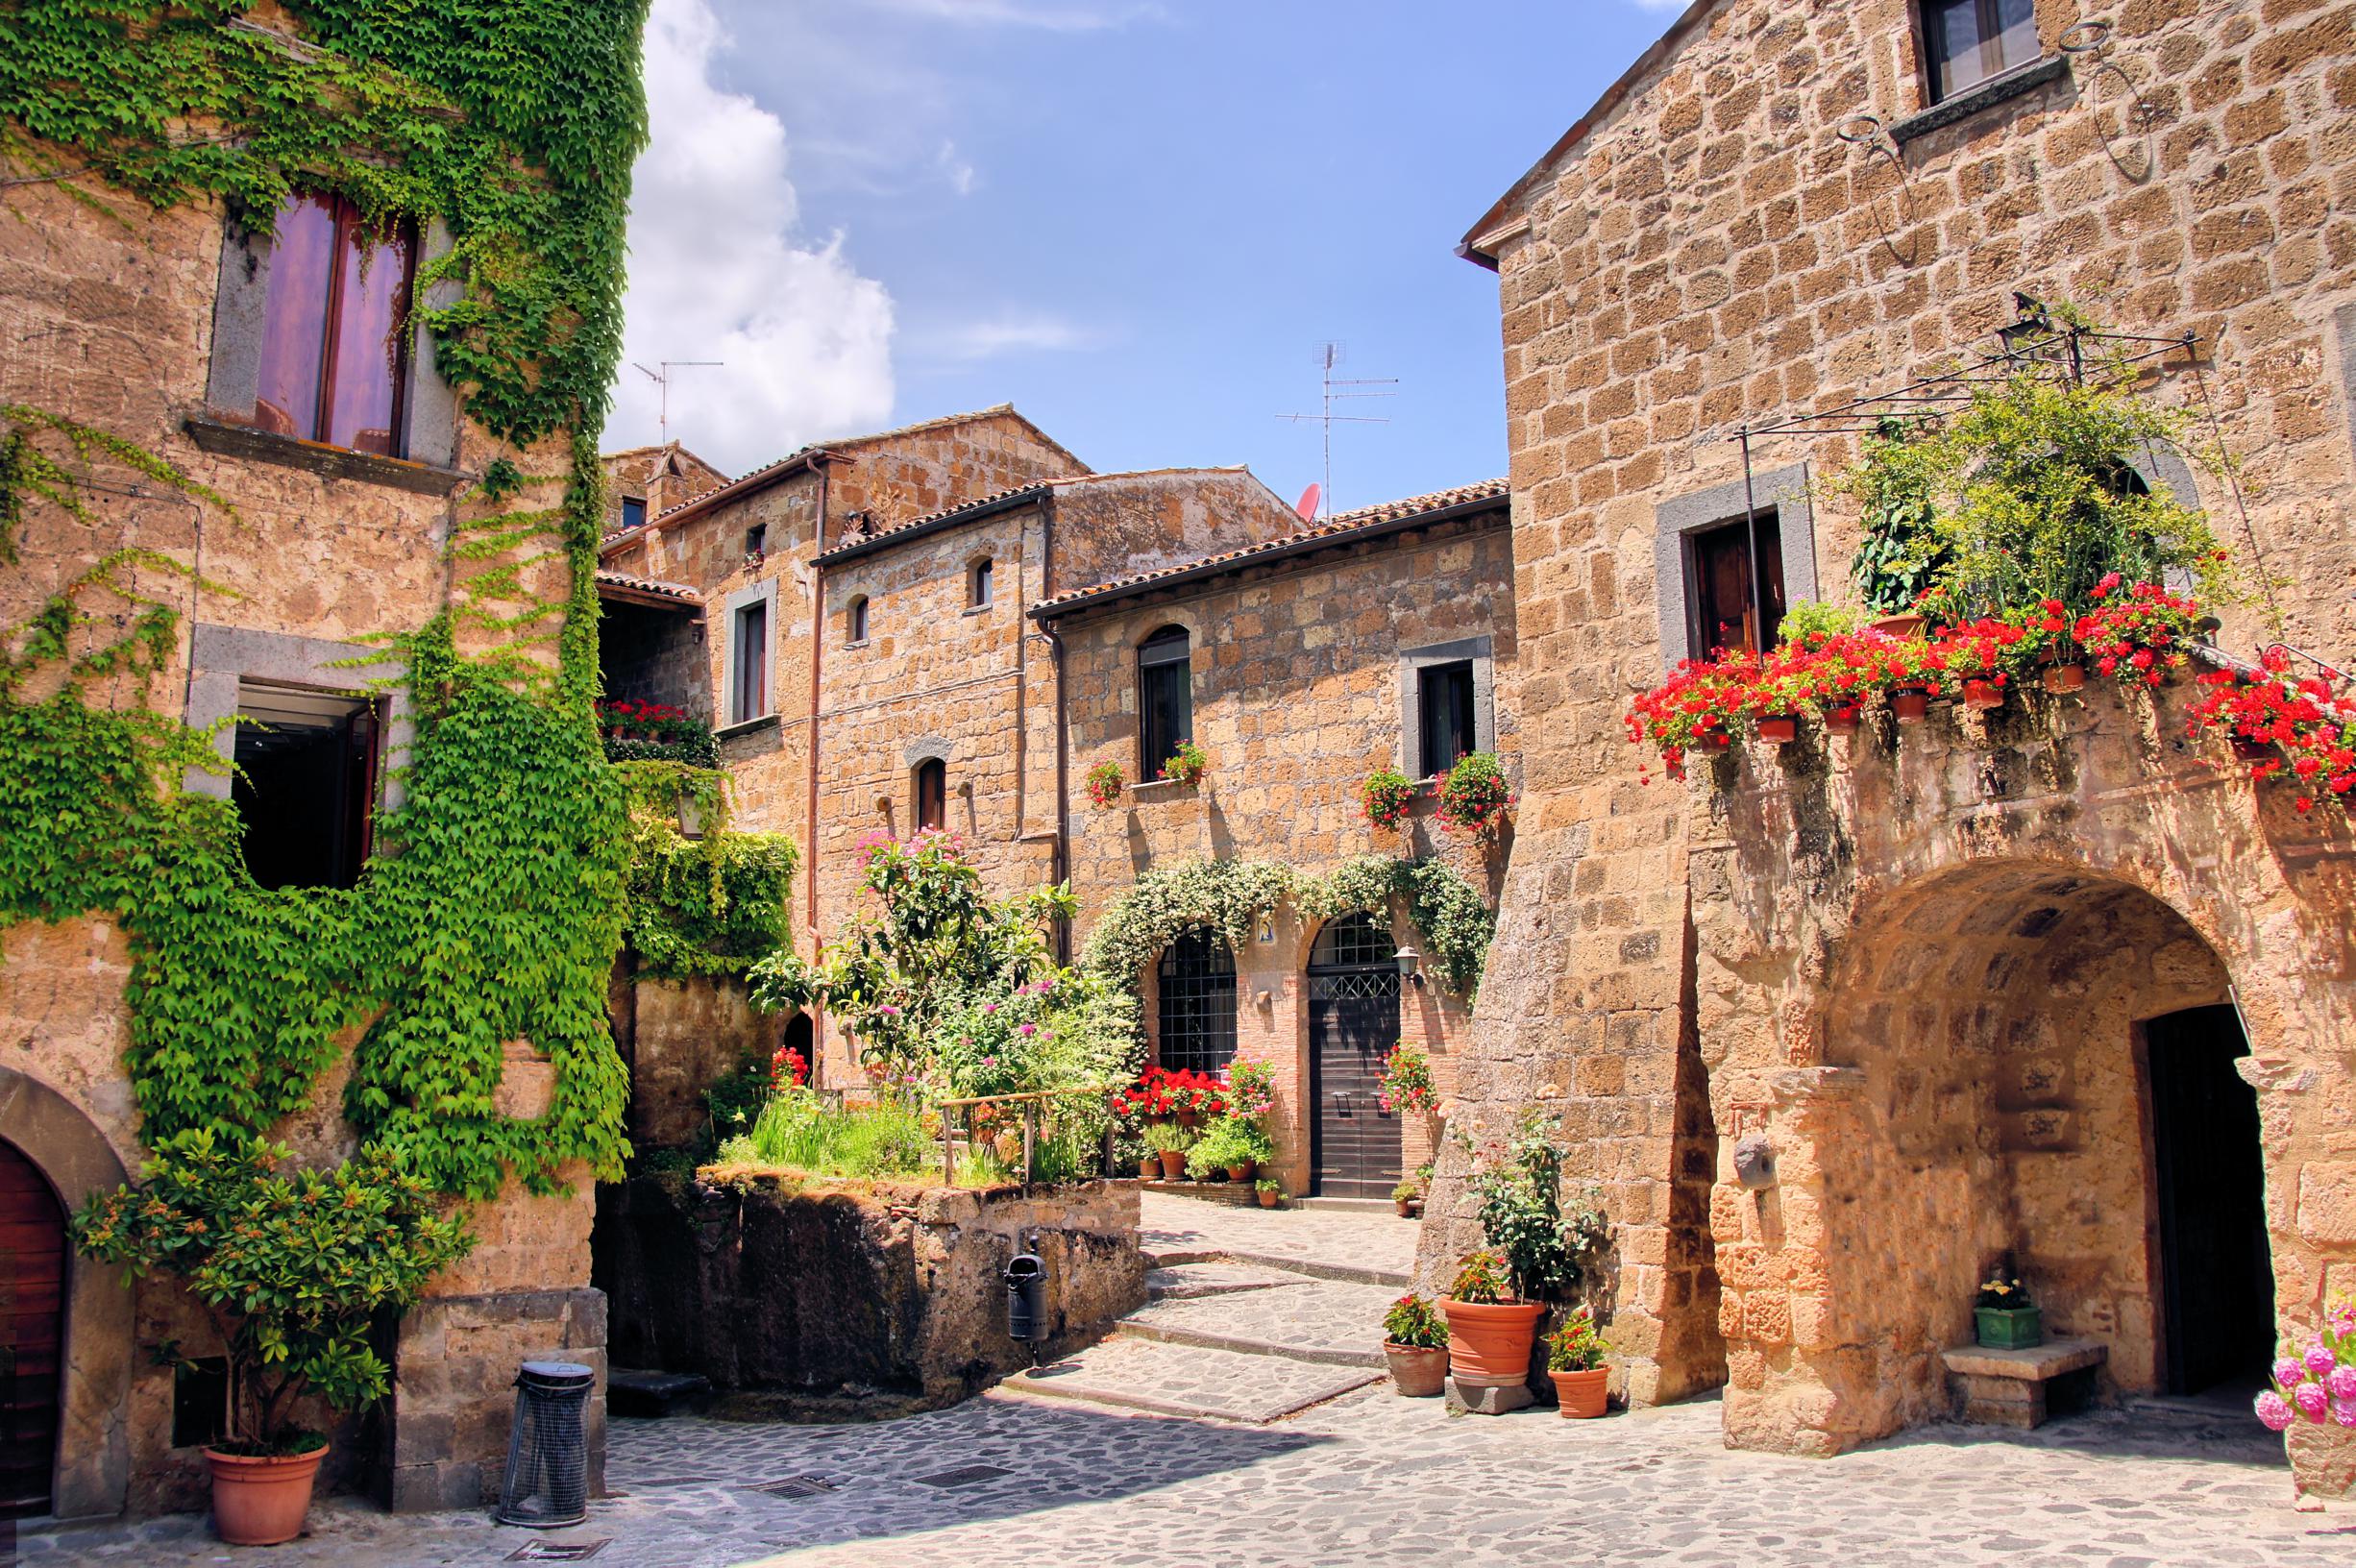 Een huis kopen voor 1 euro in Italië? Deze man weet er alles van, en het alleen maar aanraden | Het Nieuwsblad Mobile